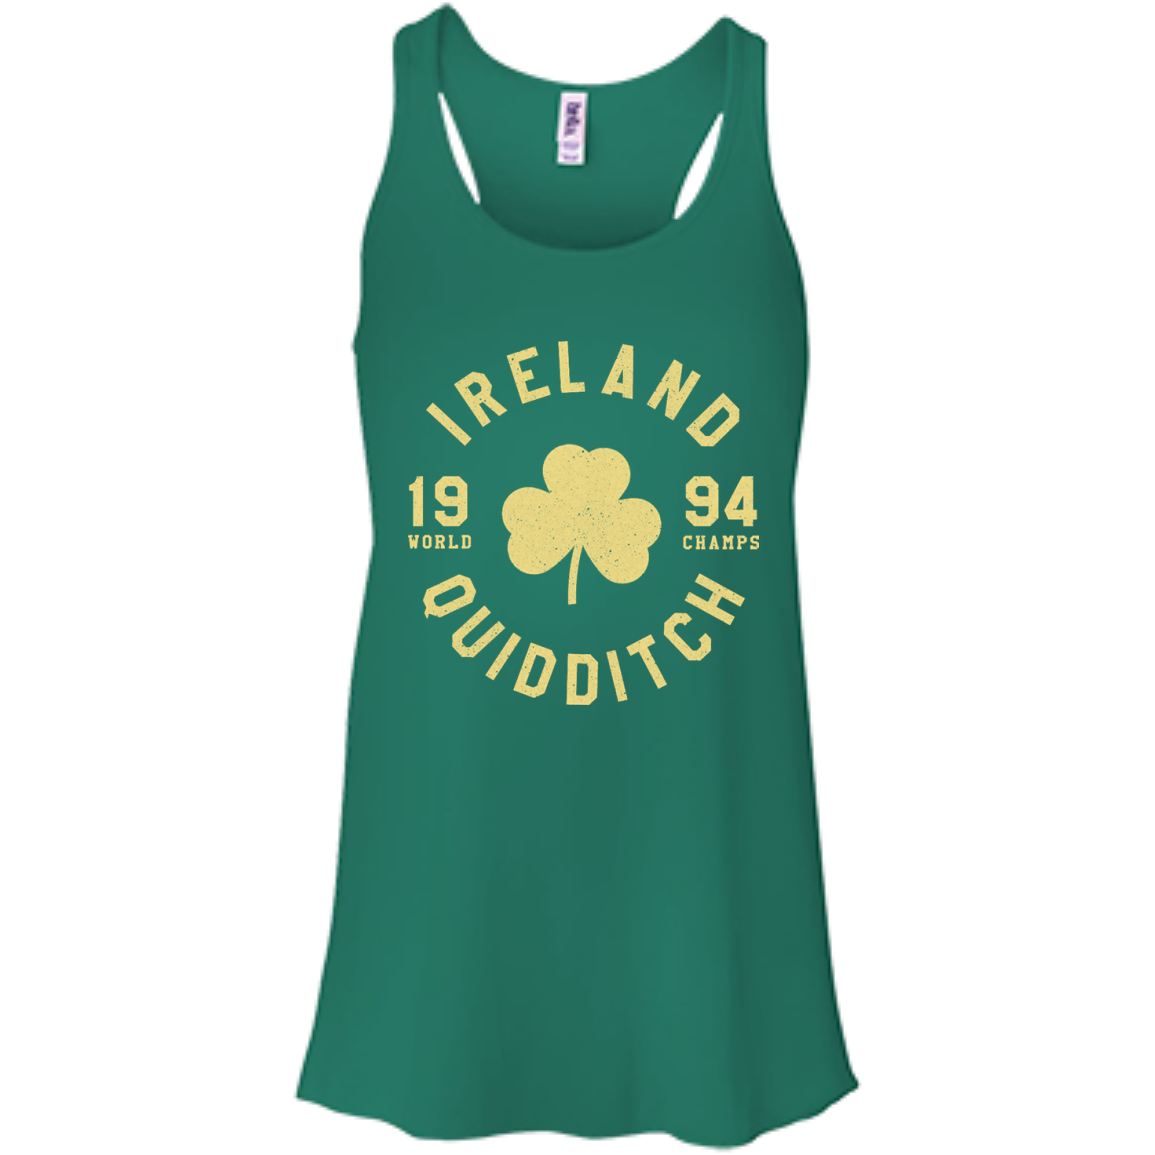 St. Patrick's Day: Ireland Quidditch Shirt, Hoodie, Tank